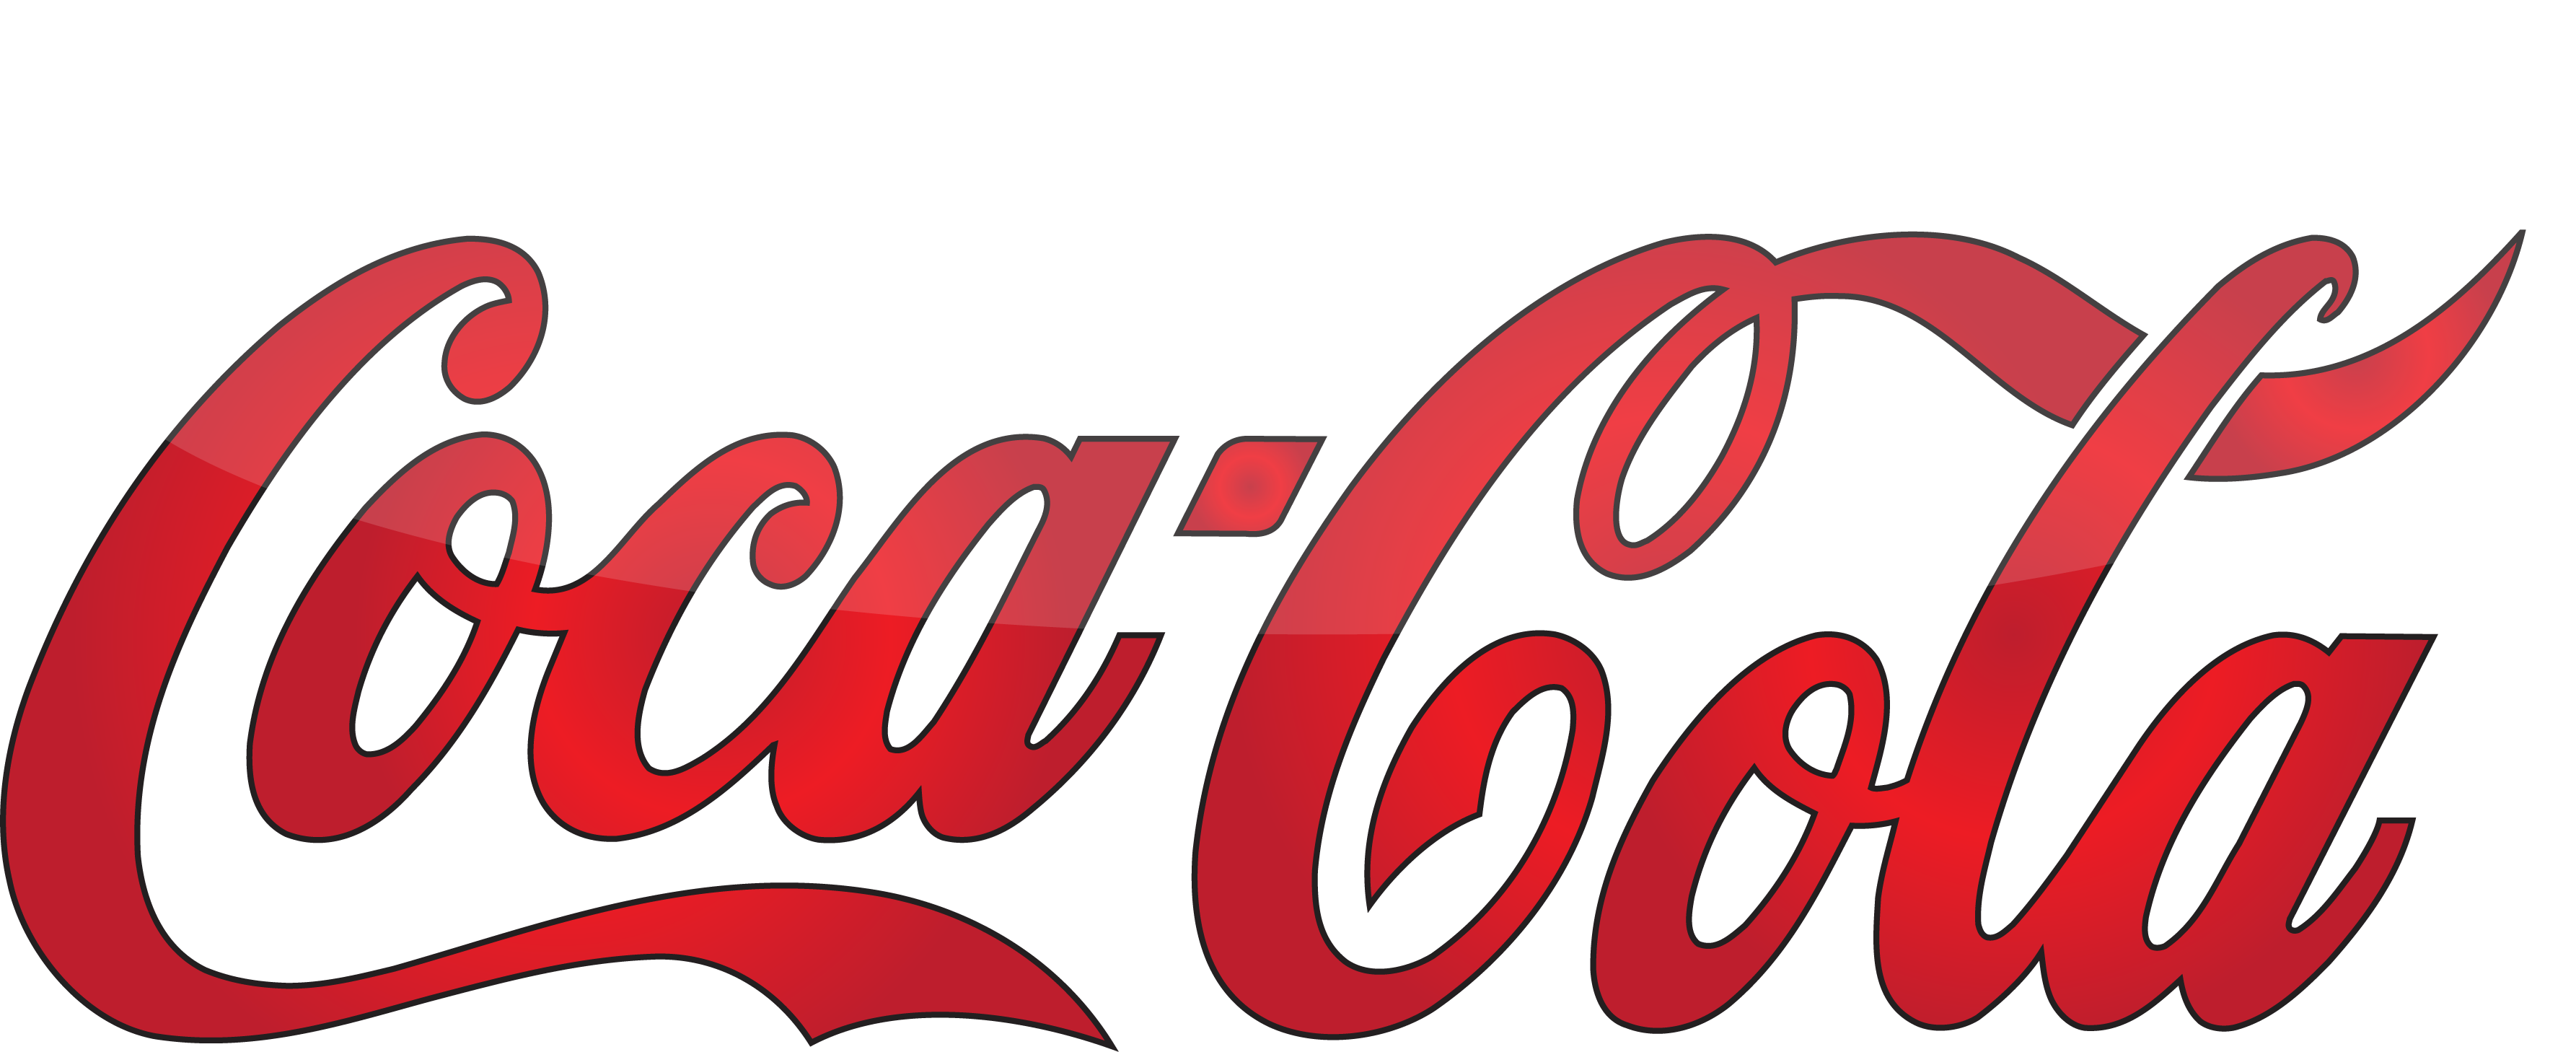 Coca Cola Logo Png Image - Coca Cola, Transparent background PNG HD thumbnail